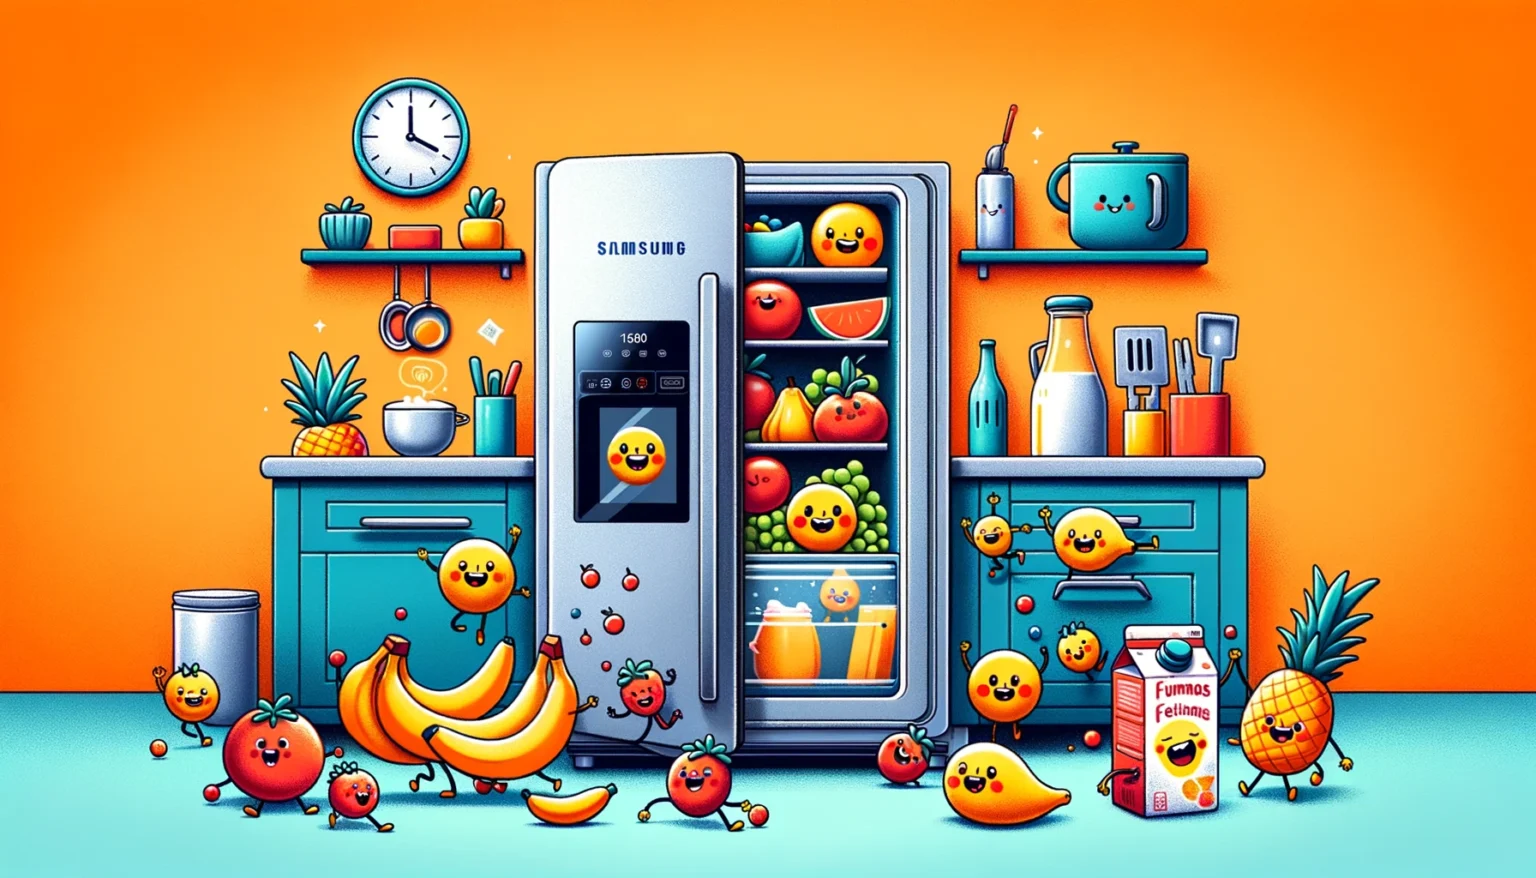 Geladeira Samsung é boa para sua cozinha